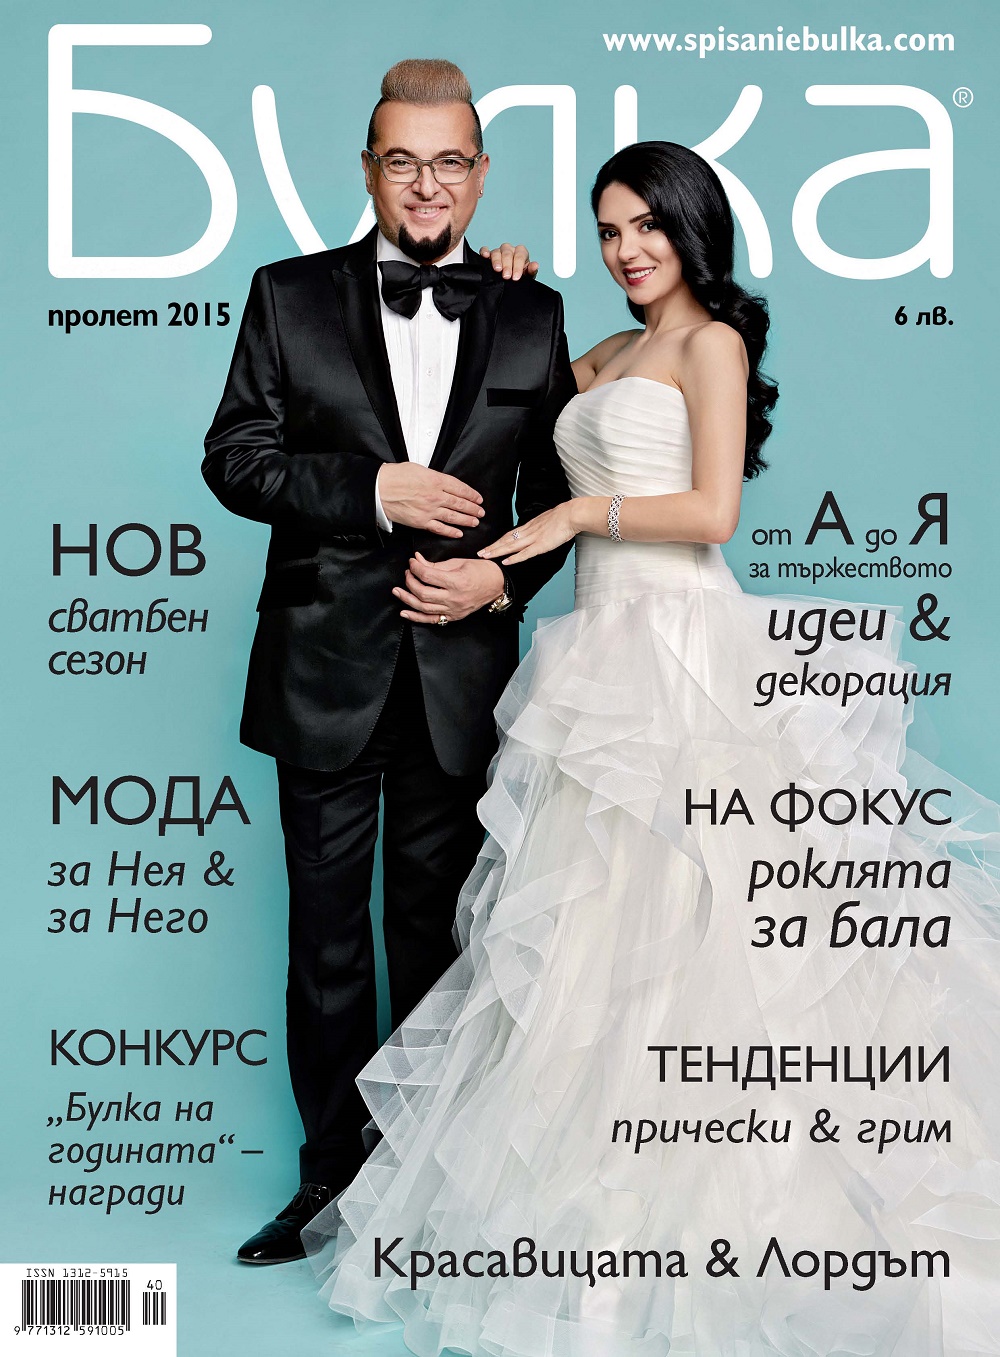 Евгени Минчев и Ели Гигова станаха младоженци